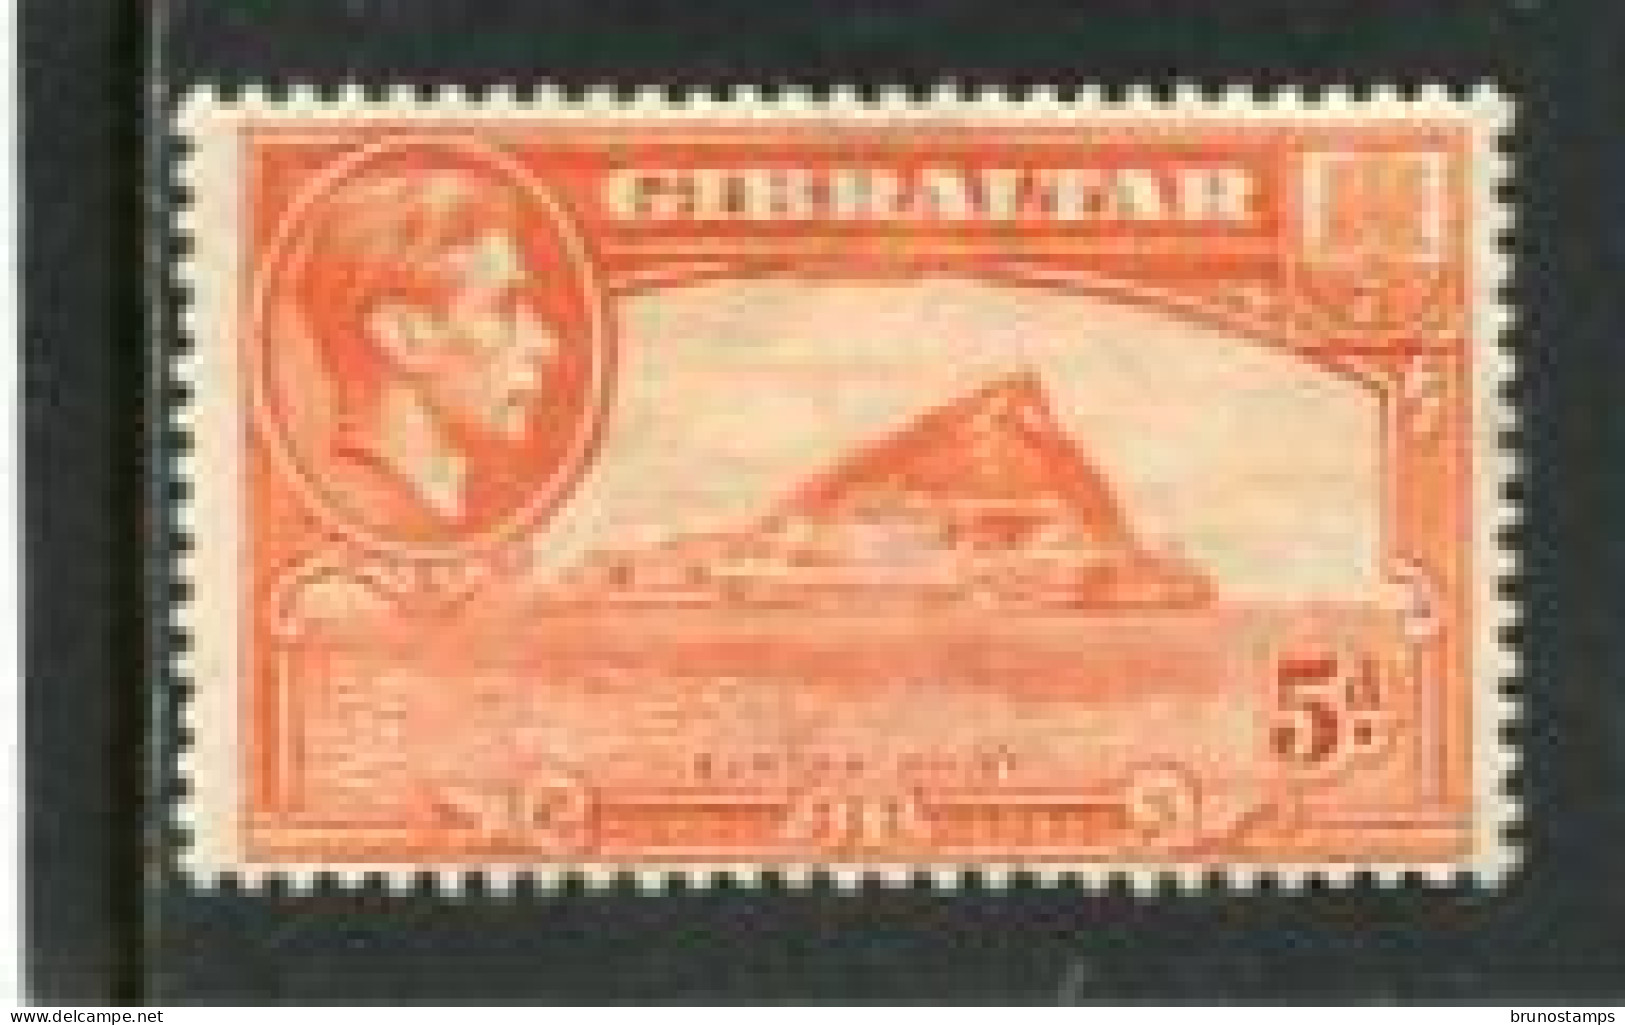 GIBRALTAR - 1947  GEORGE VI   5d  THE ROCK  MINT - Gibraltar